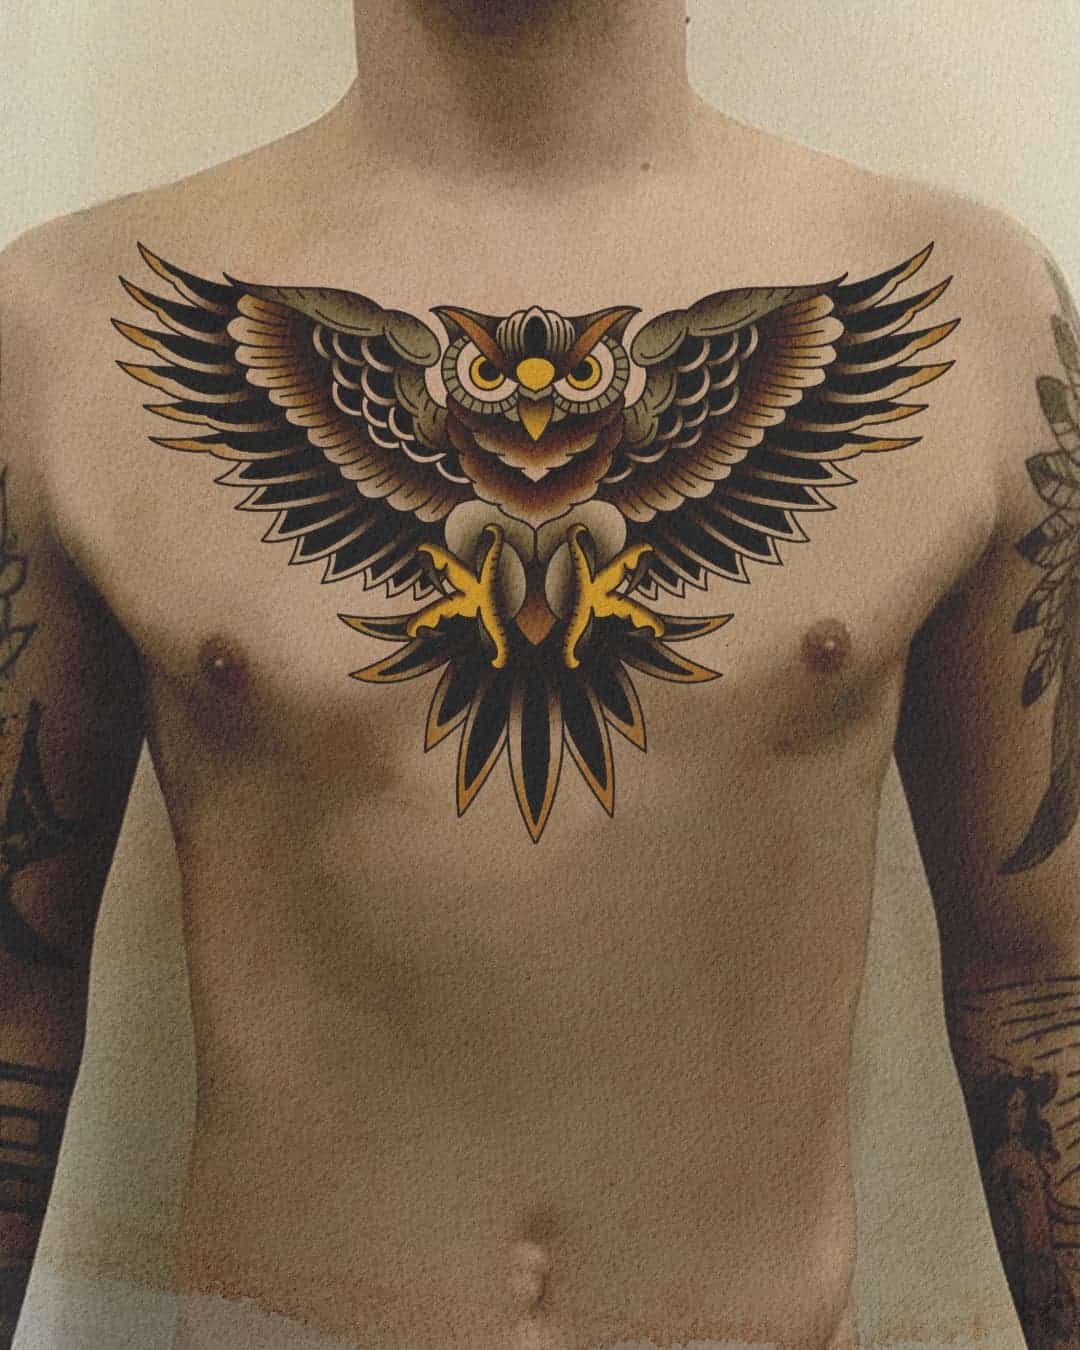 Owl chest tattoo : r/TattooDesigns